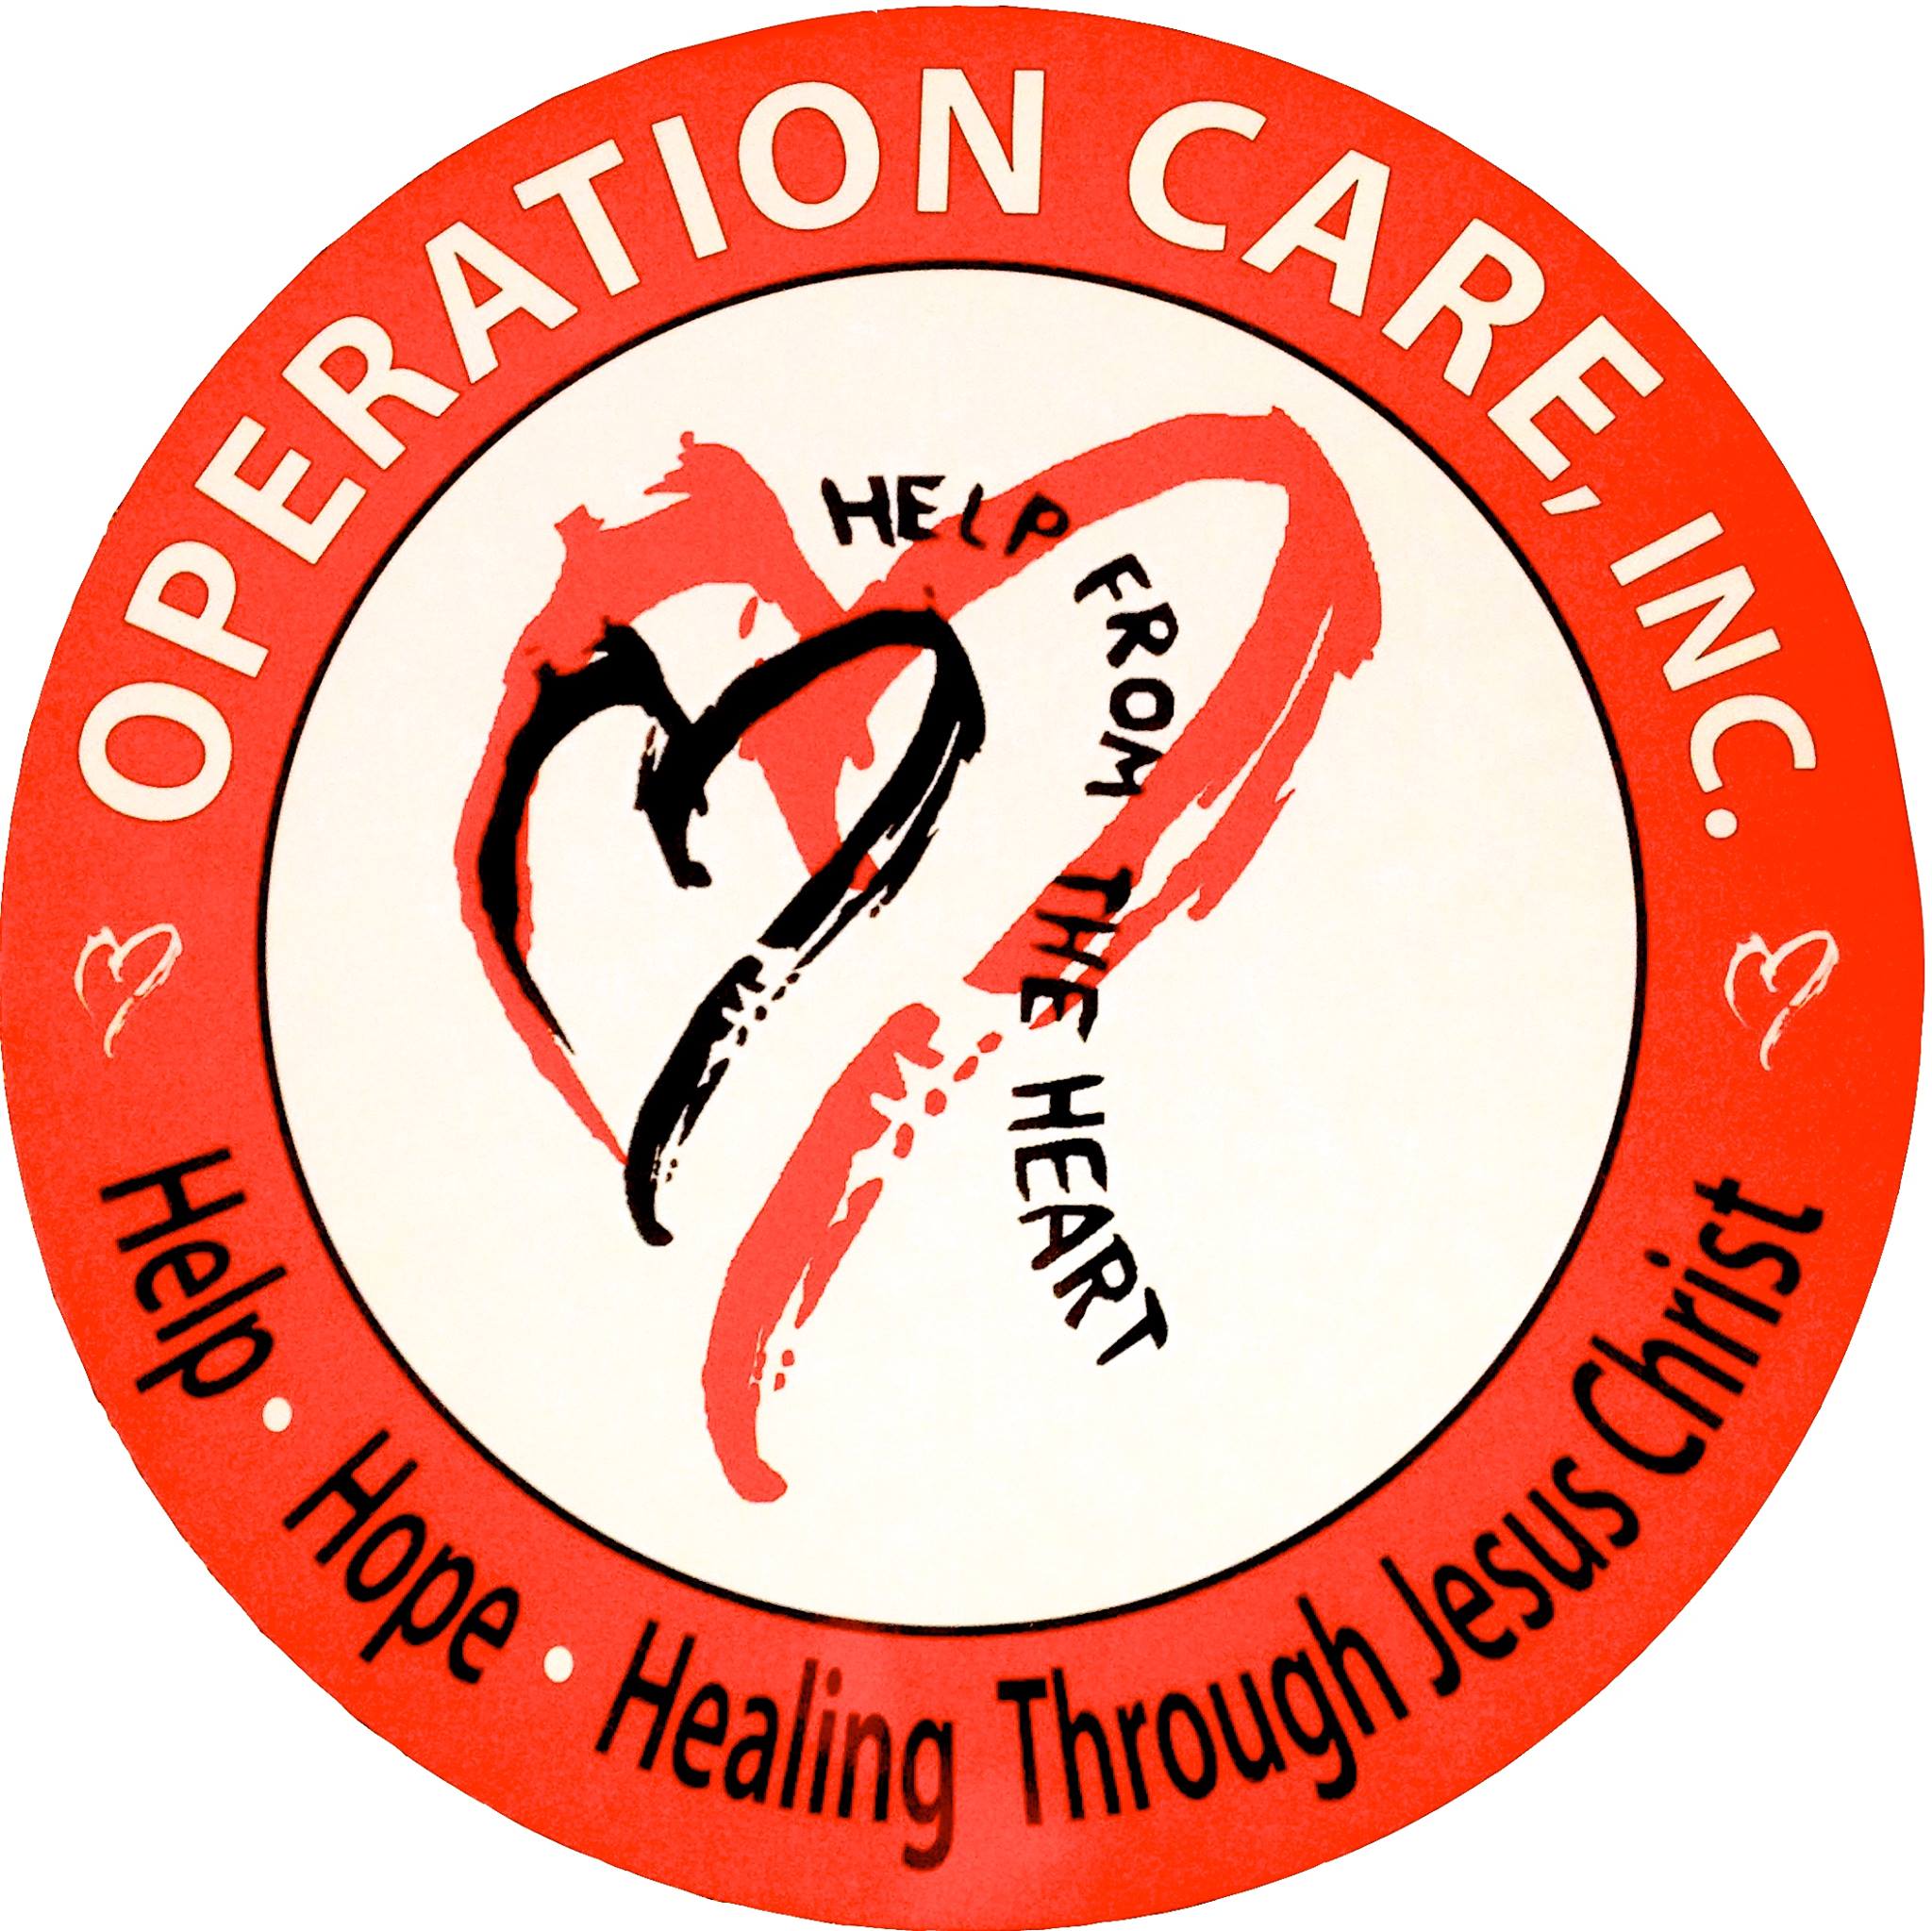 Operation Care - Omega House